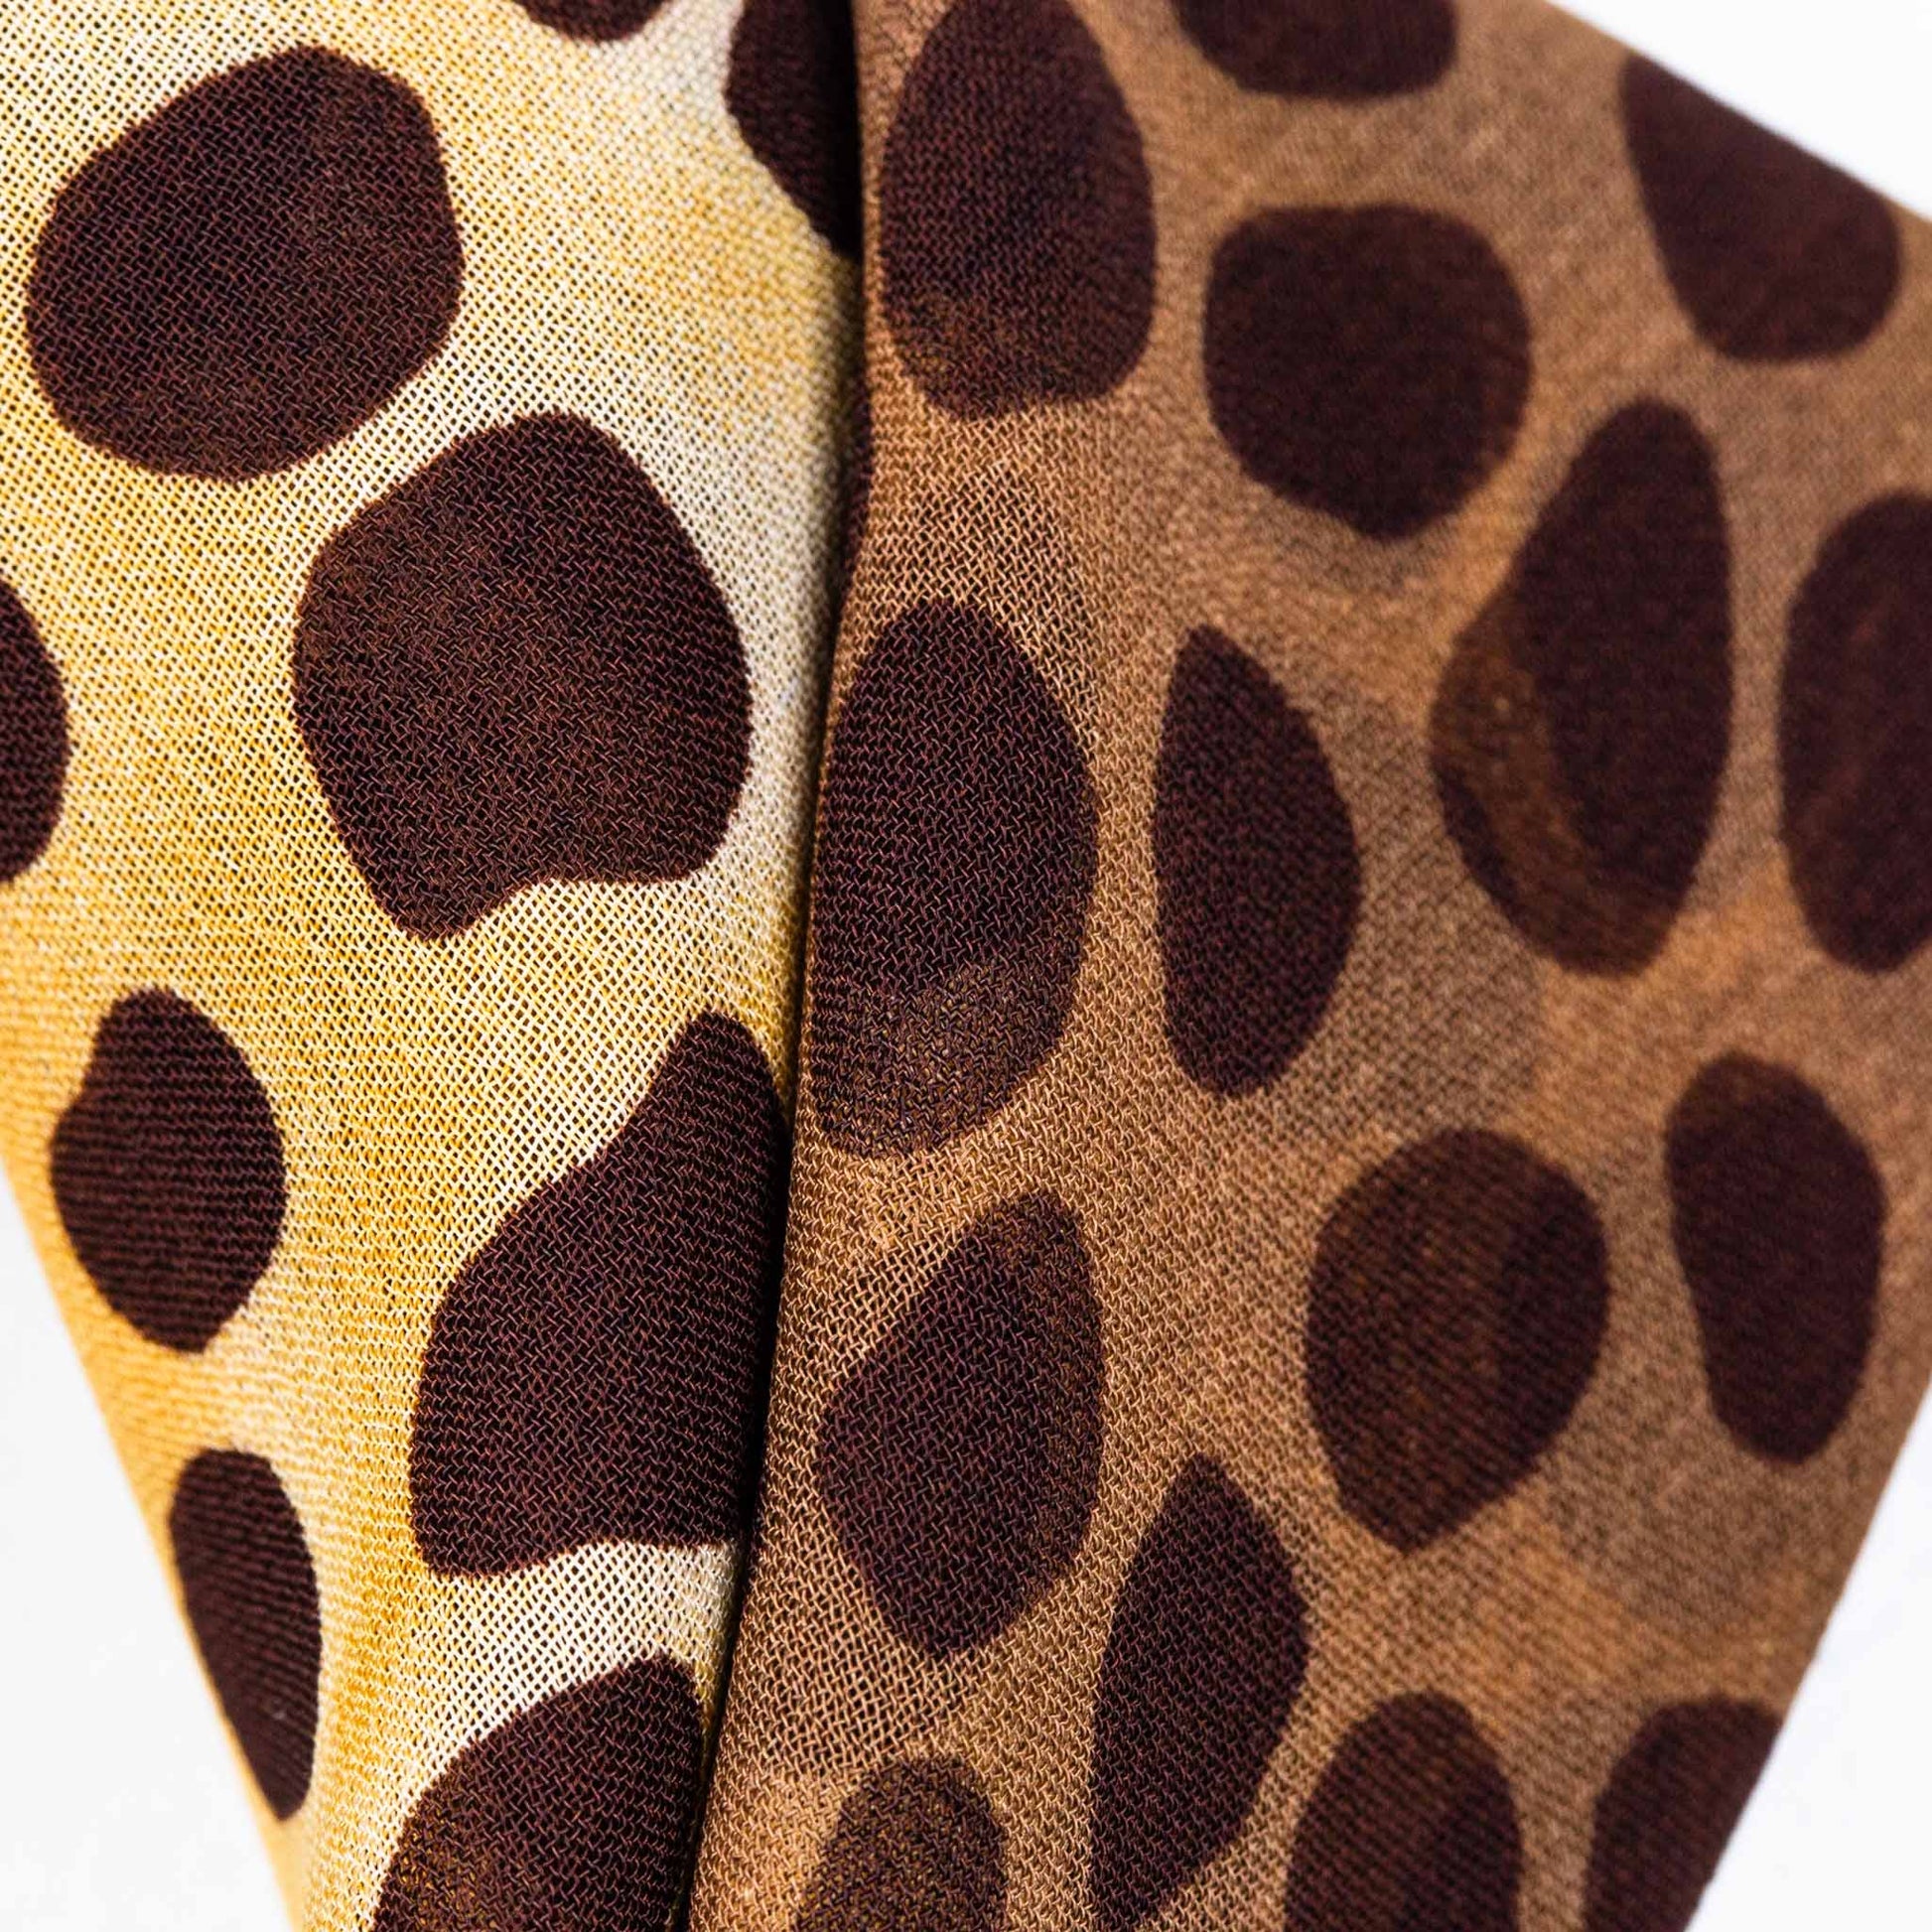 Eșarfă damă din mătase cu animal print în degrade, 65 x 65 cm - Maro